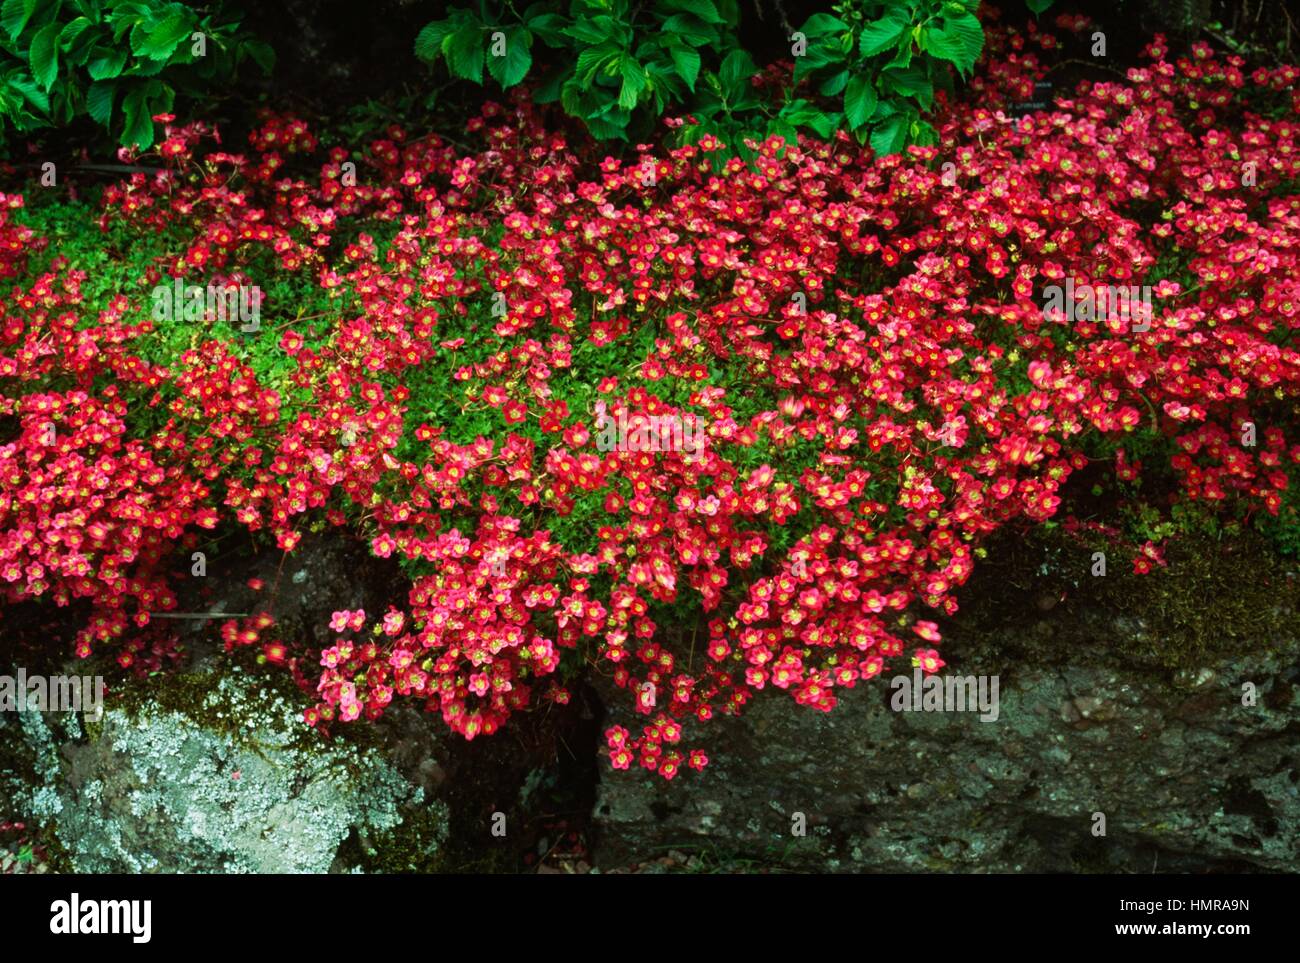 Saxifrage (Saxifraga Glassel Crimson), Saxifragaceae. Stock Photo